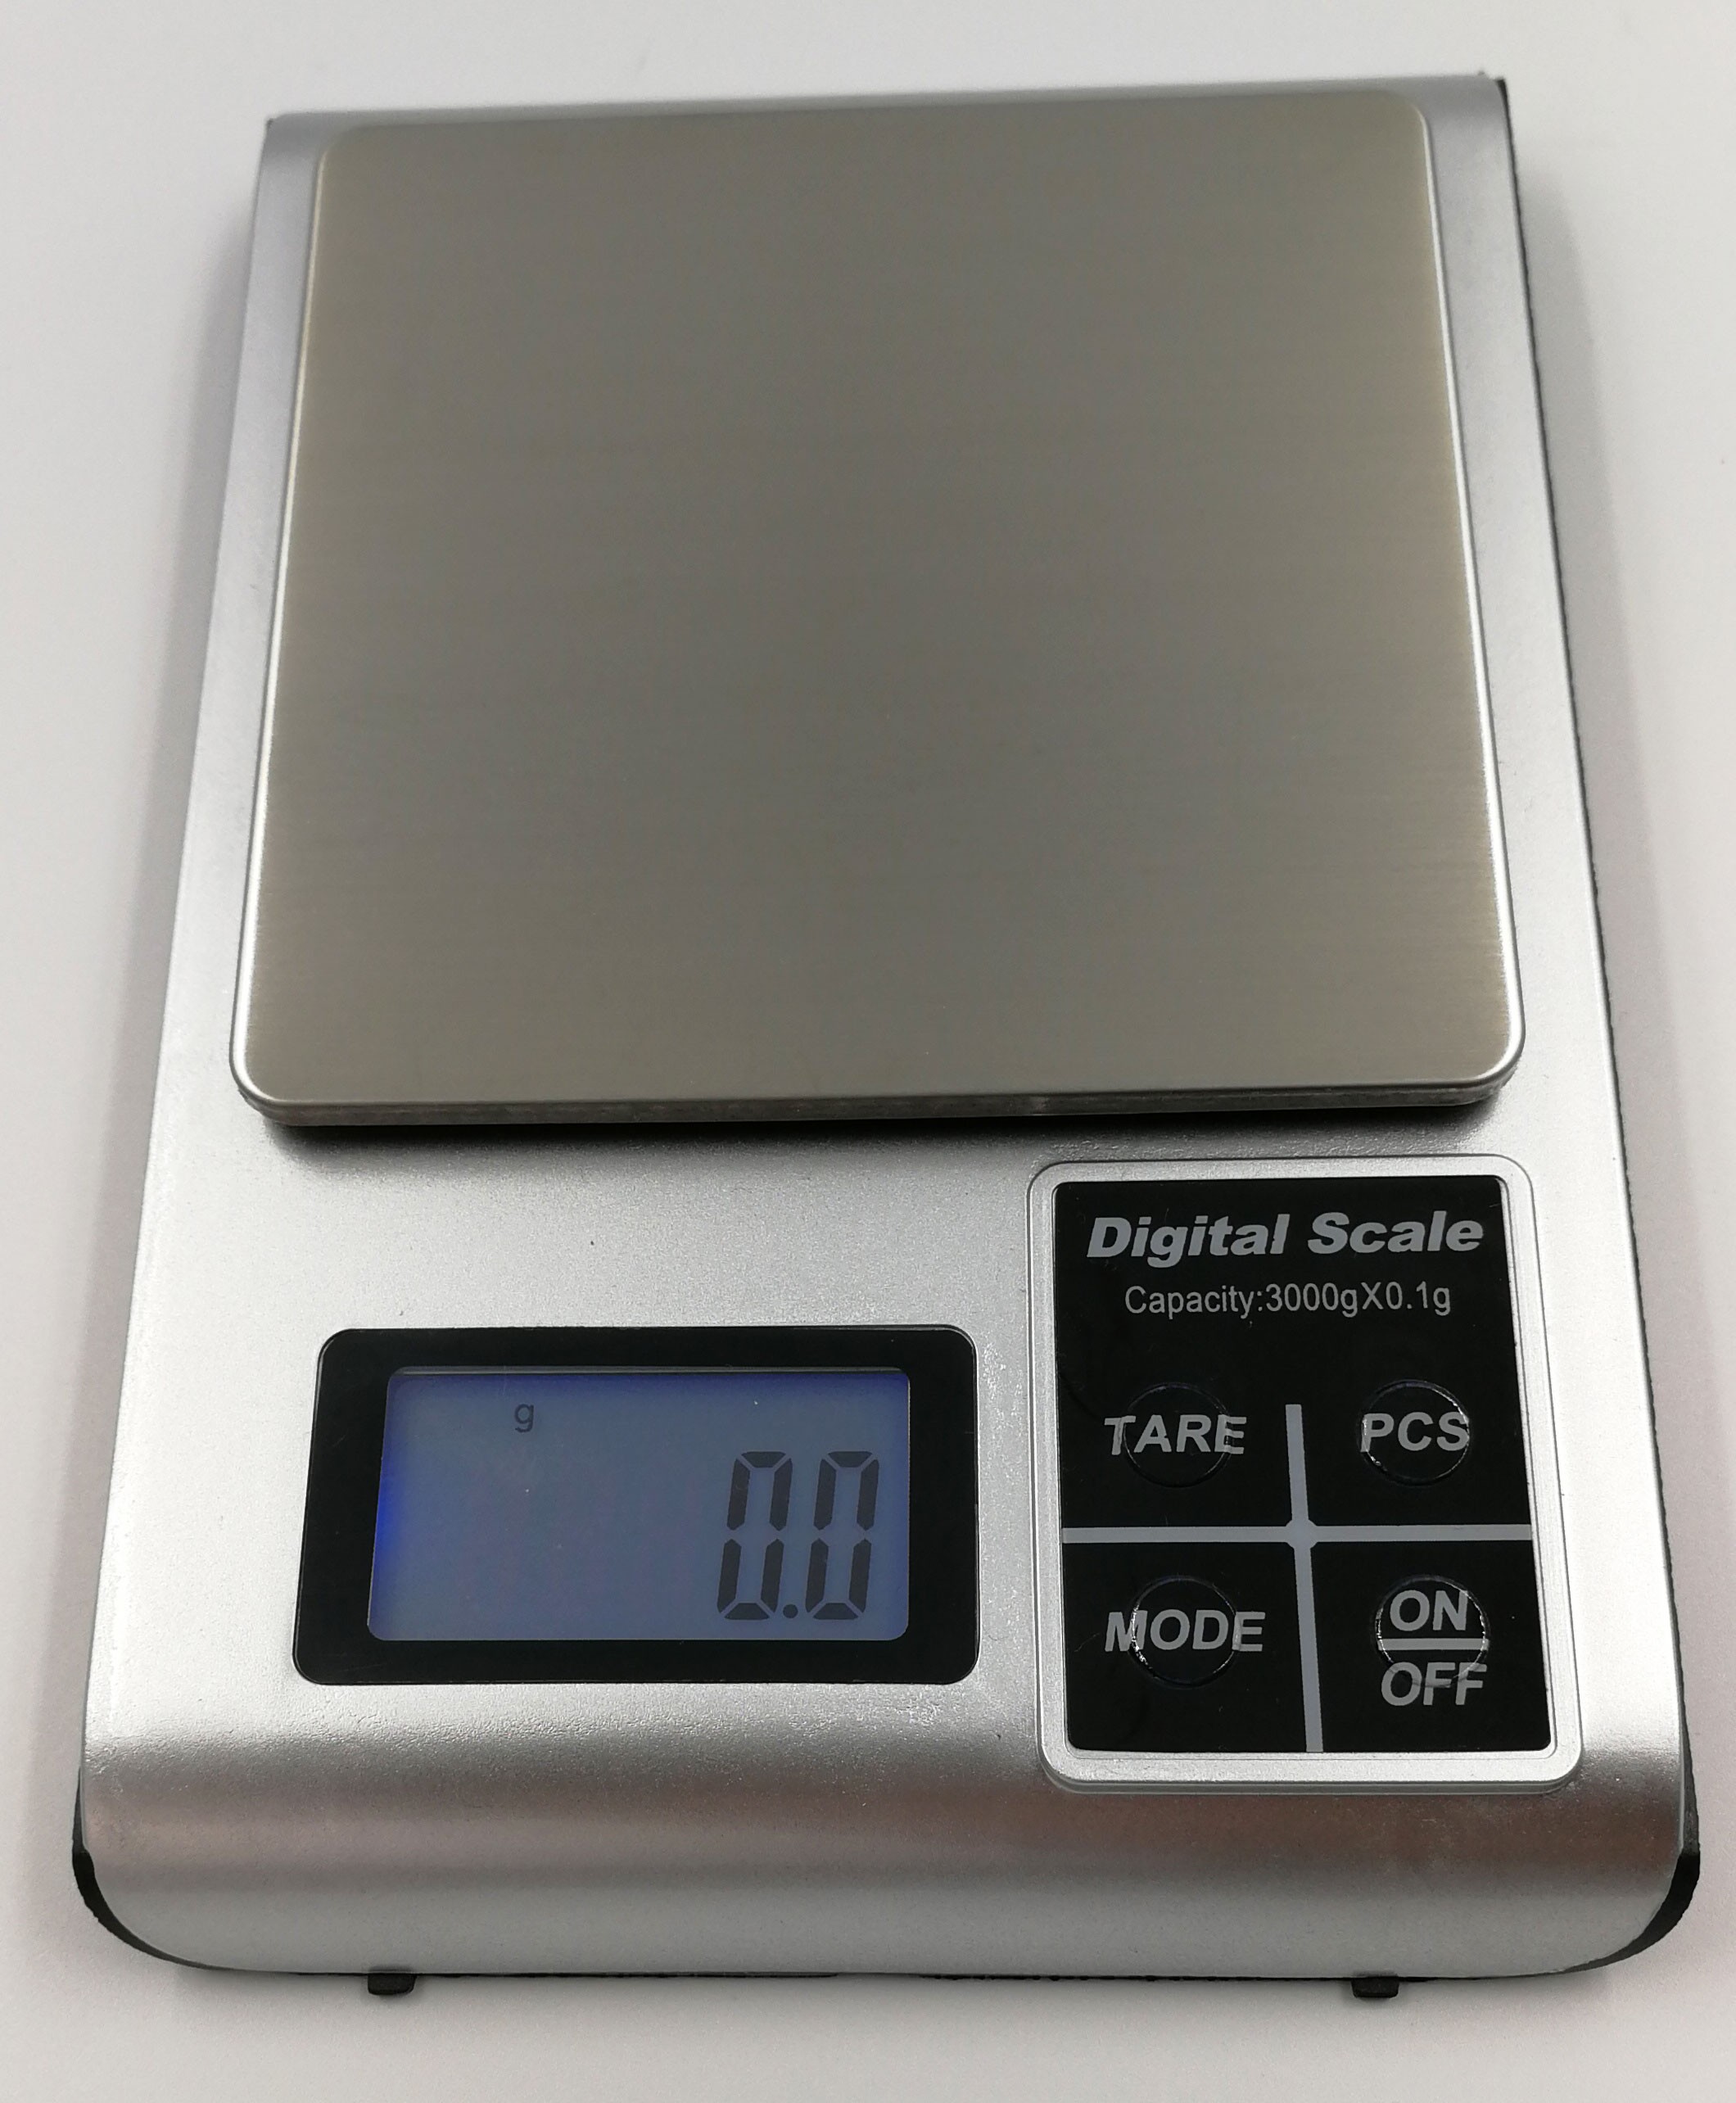 KM-3000 digitální váha do 3kg / 0,1g